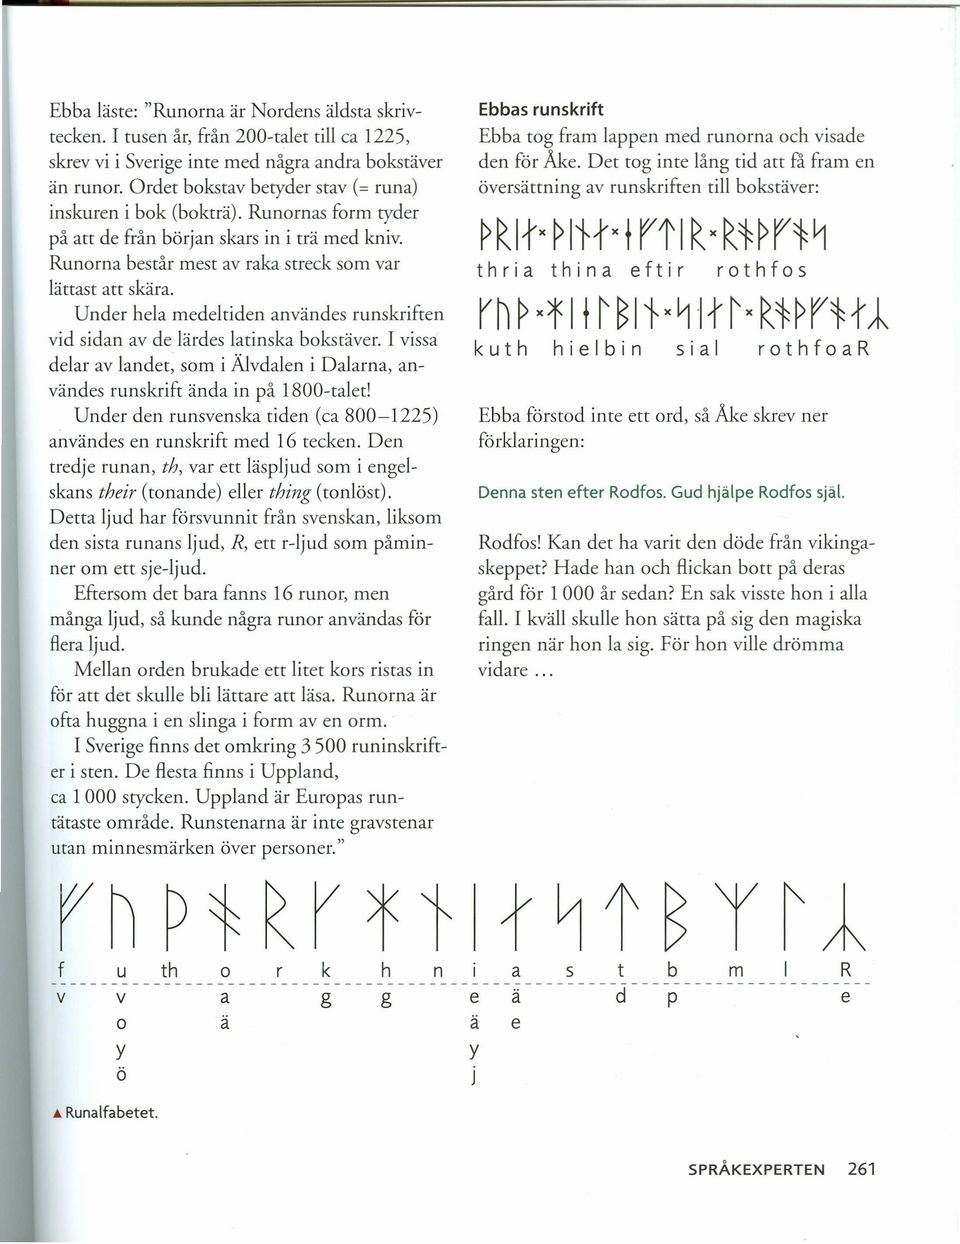 Under hela medeltiden användes runskriften vid sidan av de lärdes latinska bokstäver. I vissa delar av landet, som i Älvdalen i Dalarna, användes runskrift ända in på 1800-talet!